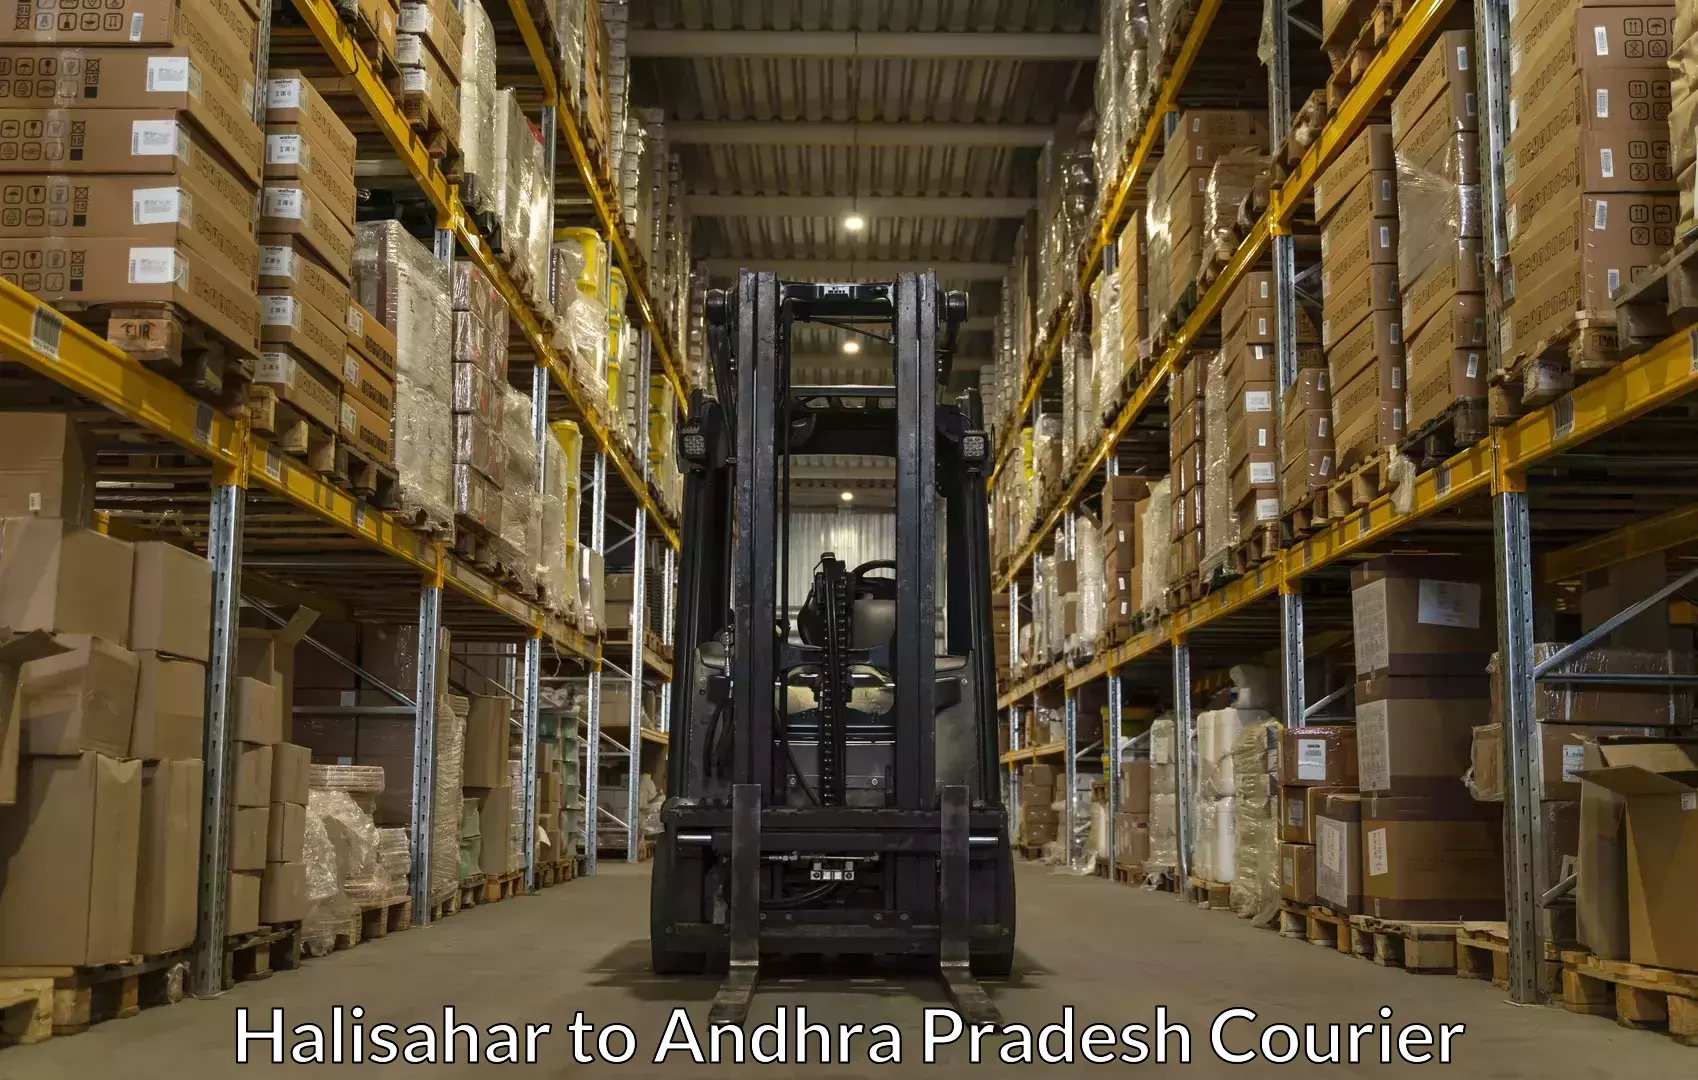 Baggage shipping experts Halisahar to Malikipuram